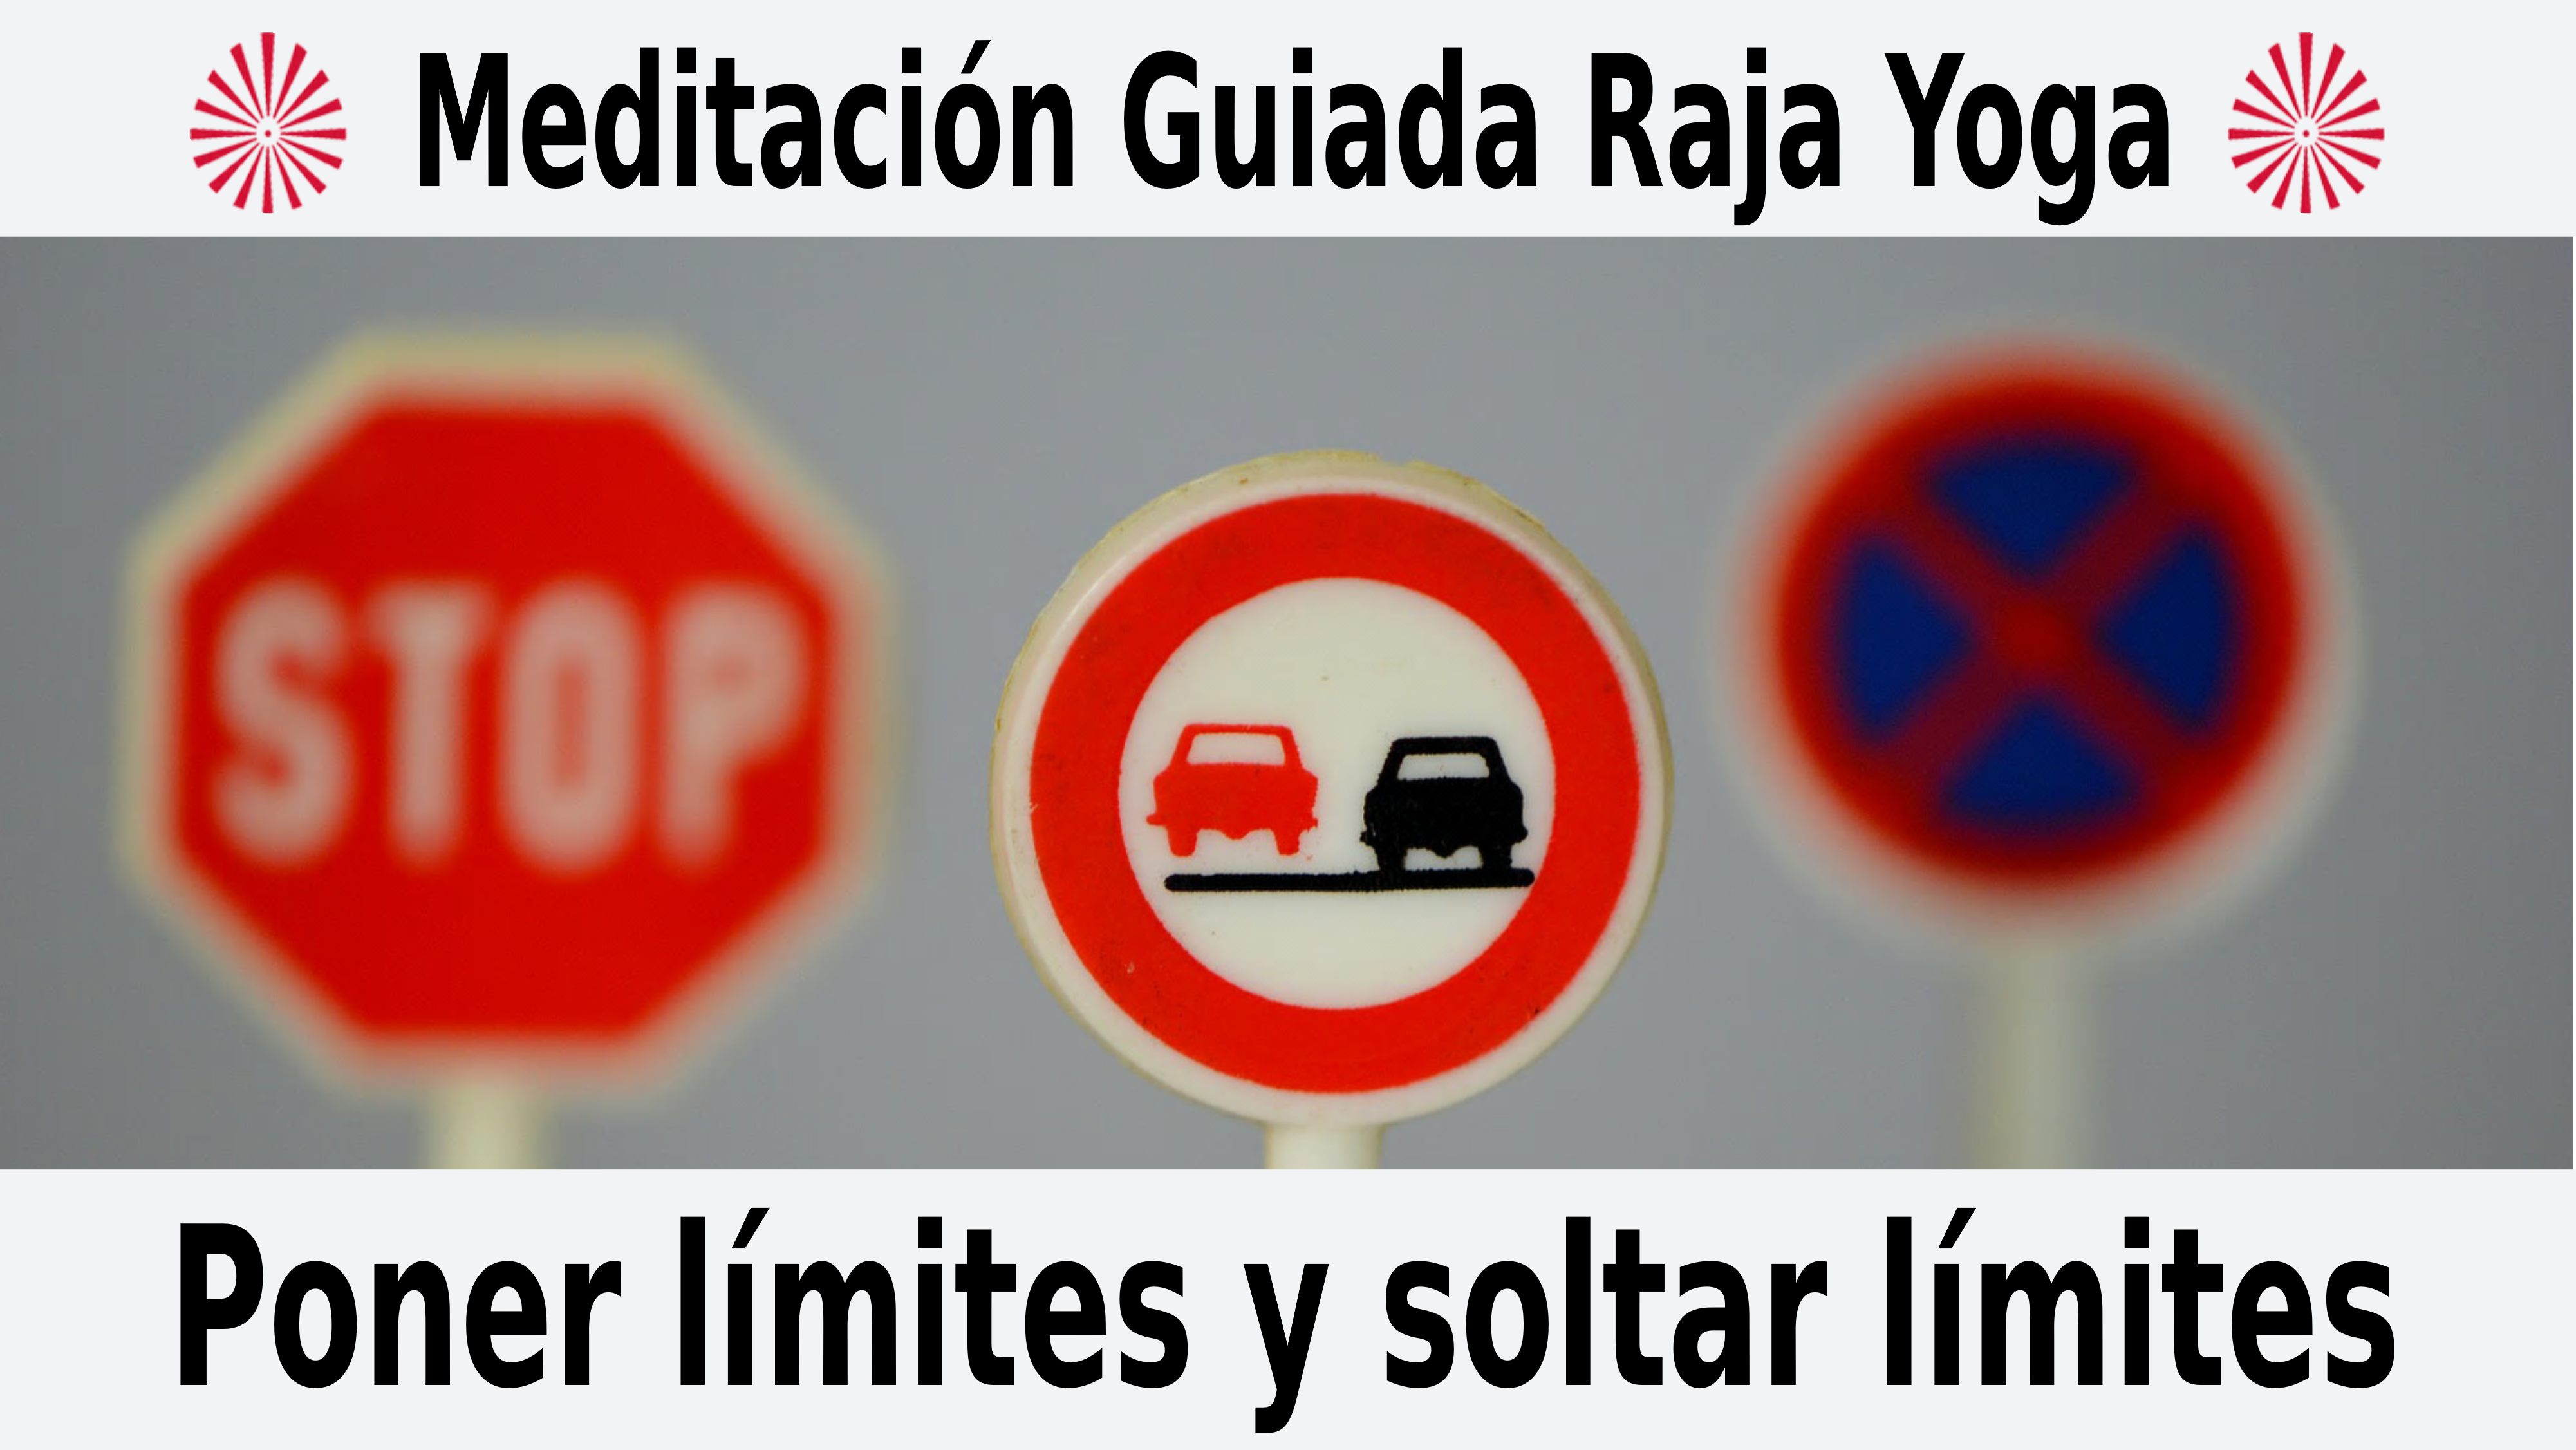 Meditación Raja Yoga: Poner límites y soltar límites (4 Noviembre 2020) On-line desde Sevilla